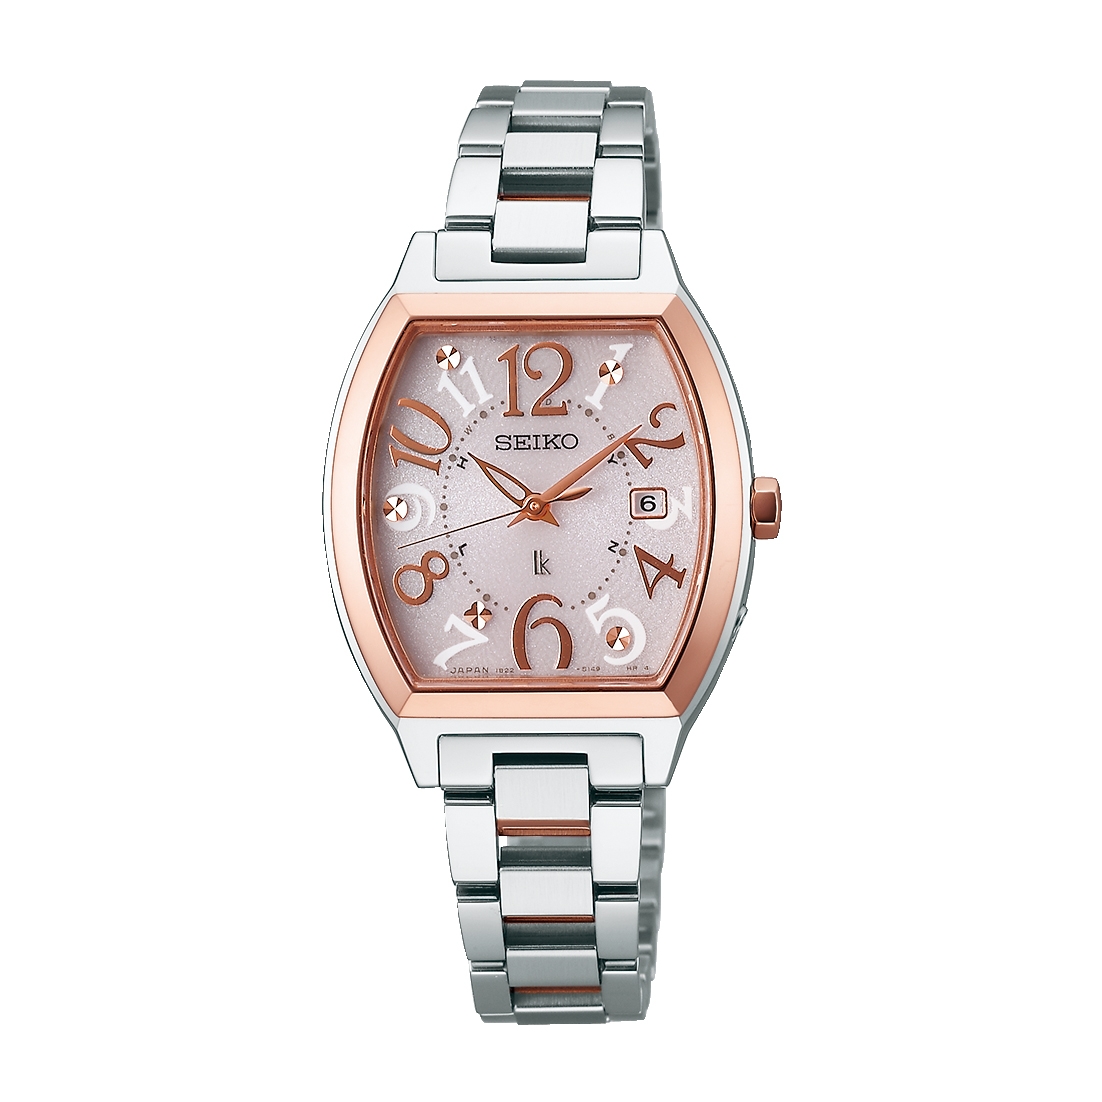 女性におすすめのサファイアガラスの腕時計人気ブランド12選 21年最新版 ベストプレゼントガイド